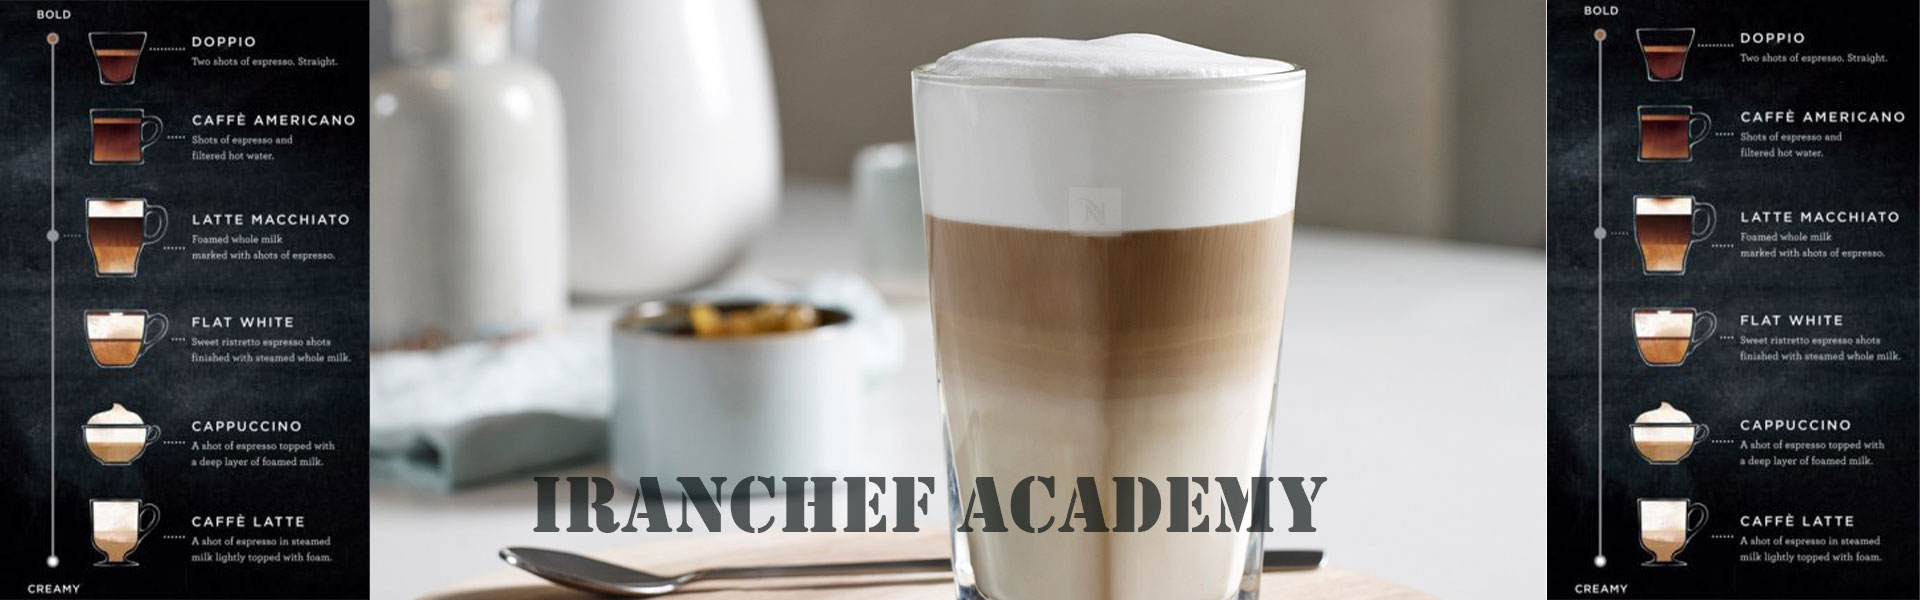 لاته ماکیاتو Latte macchiato در مدرسه قهوه ایران شف